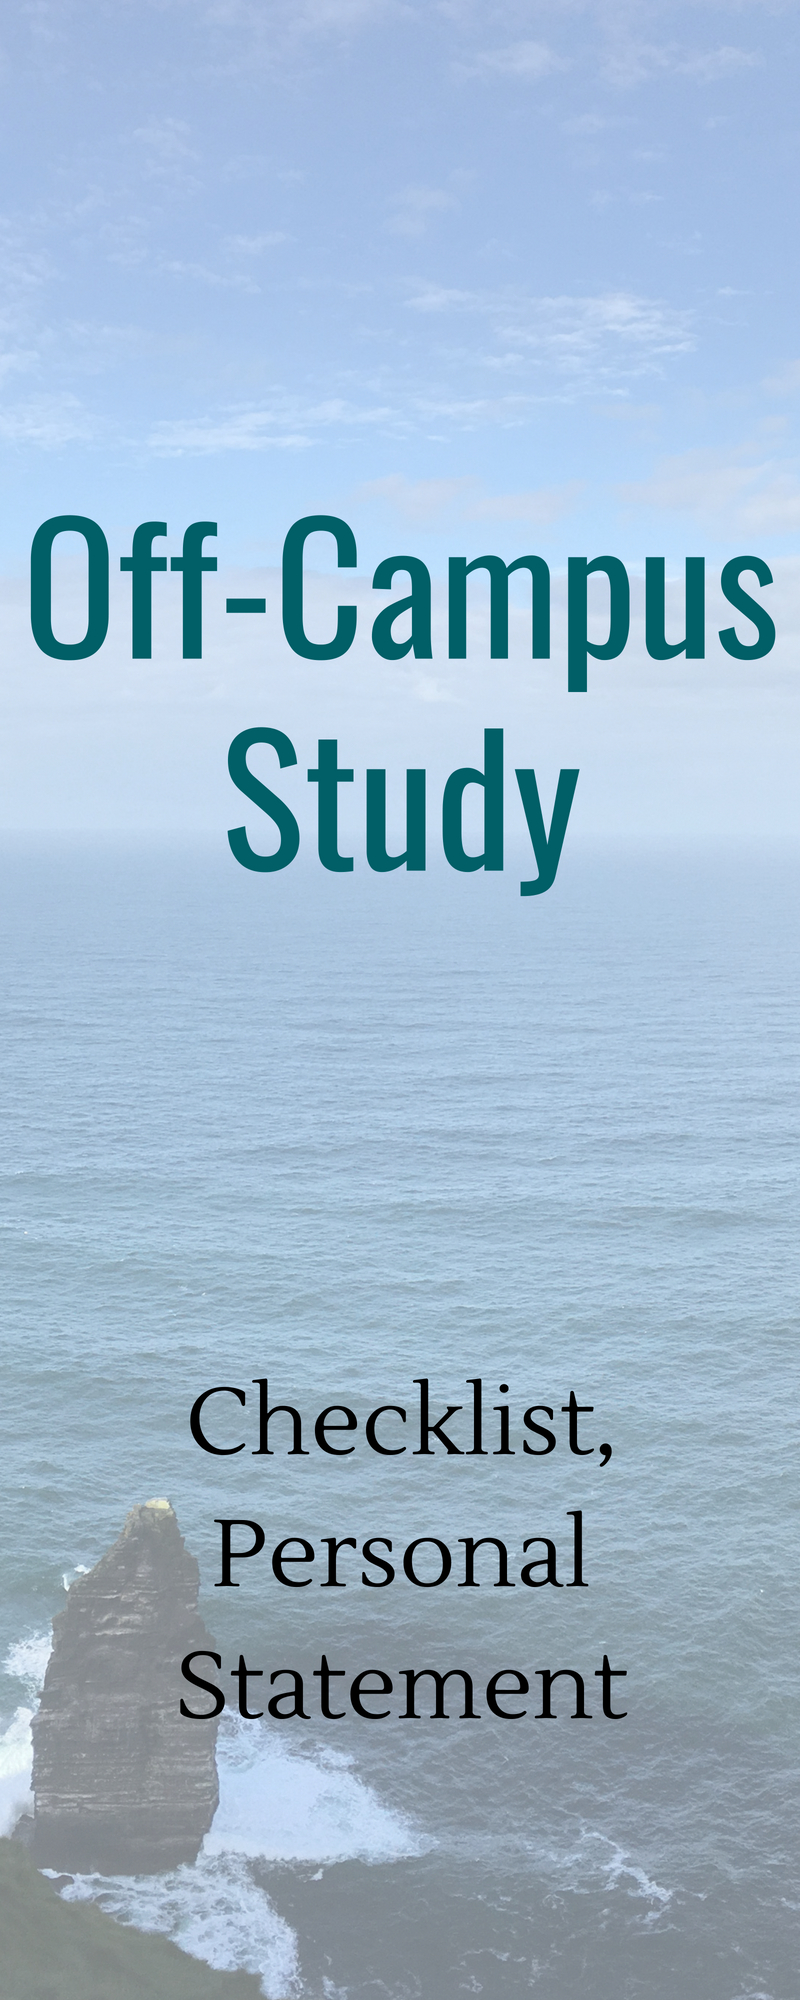 Off-campus Study